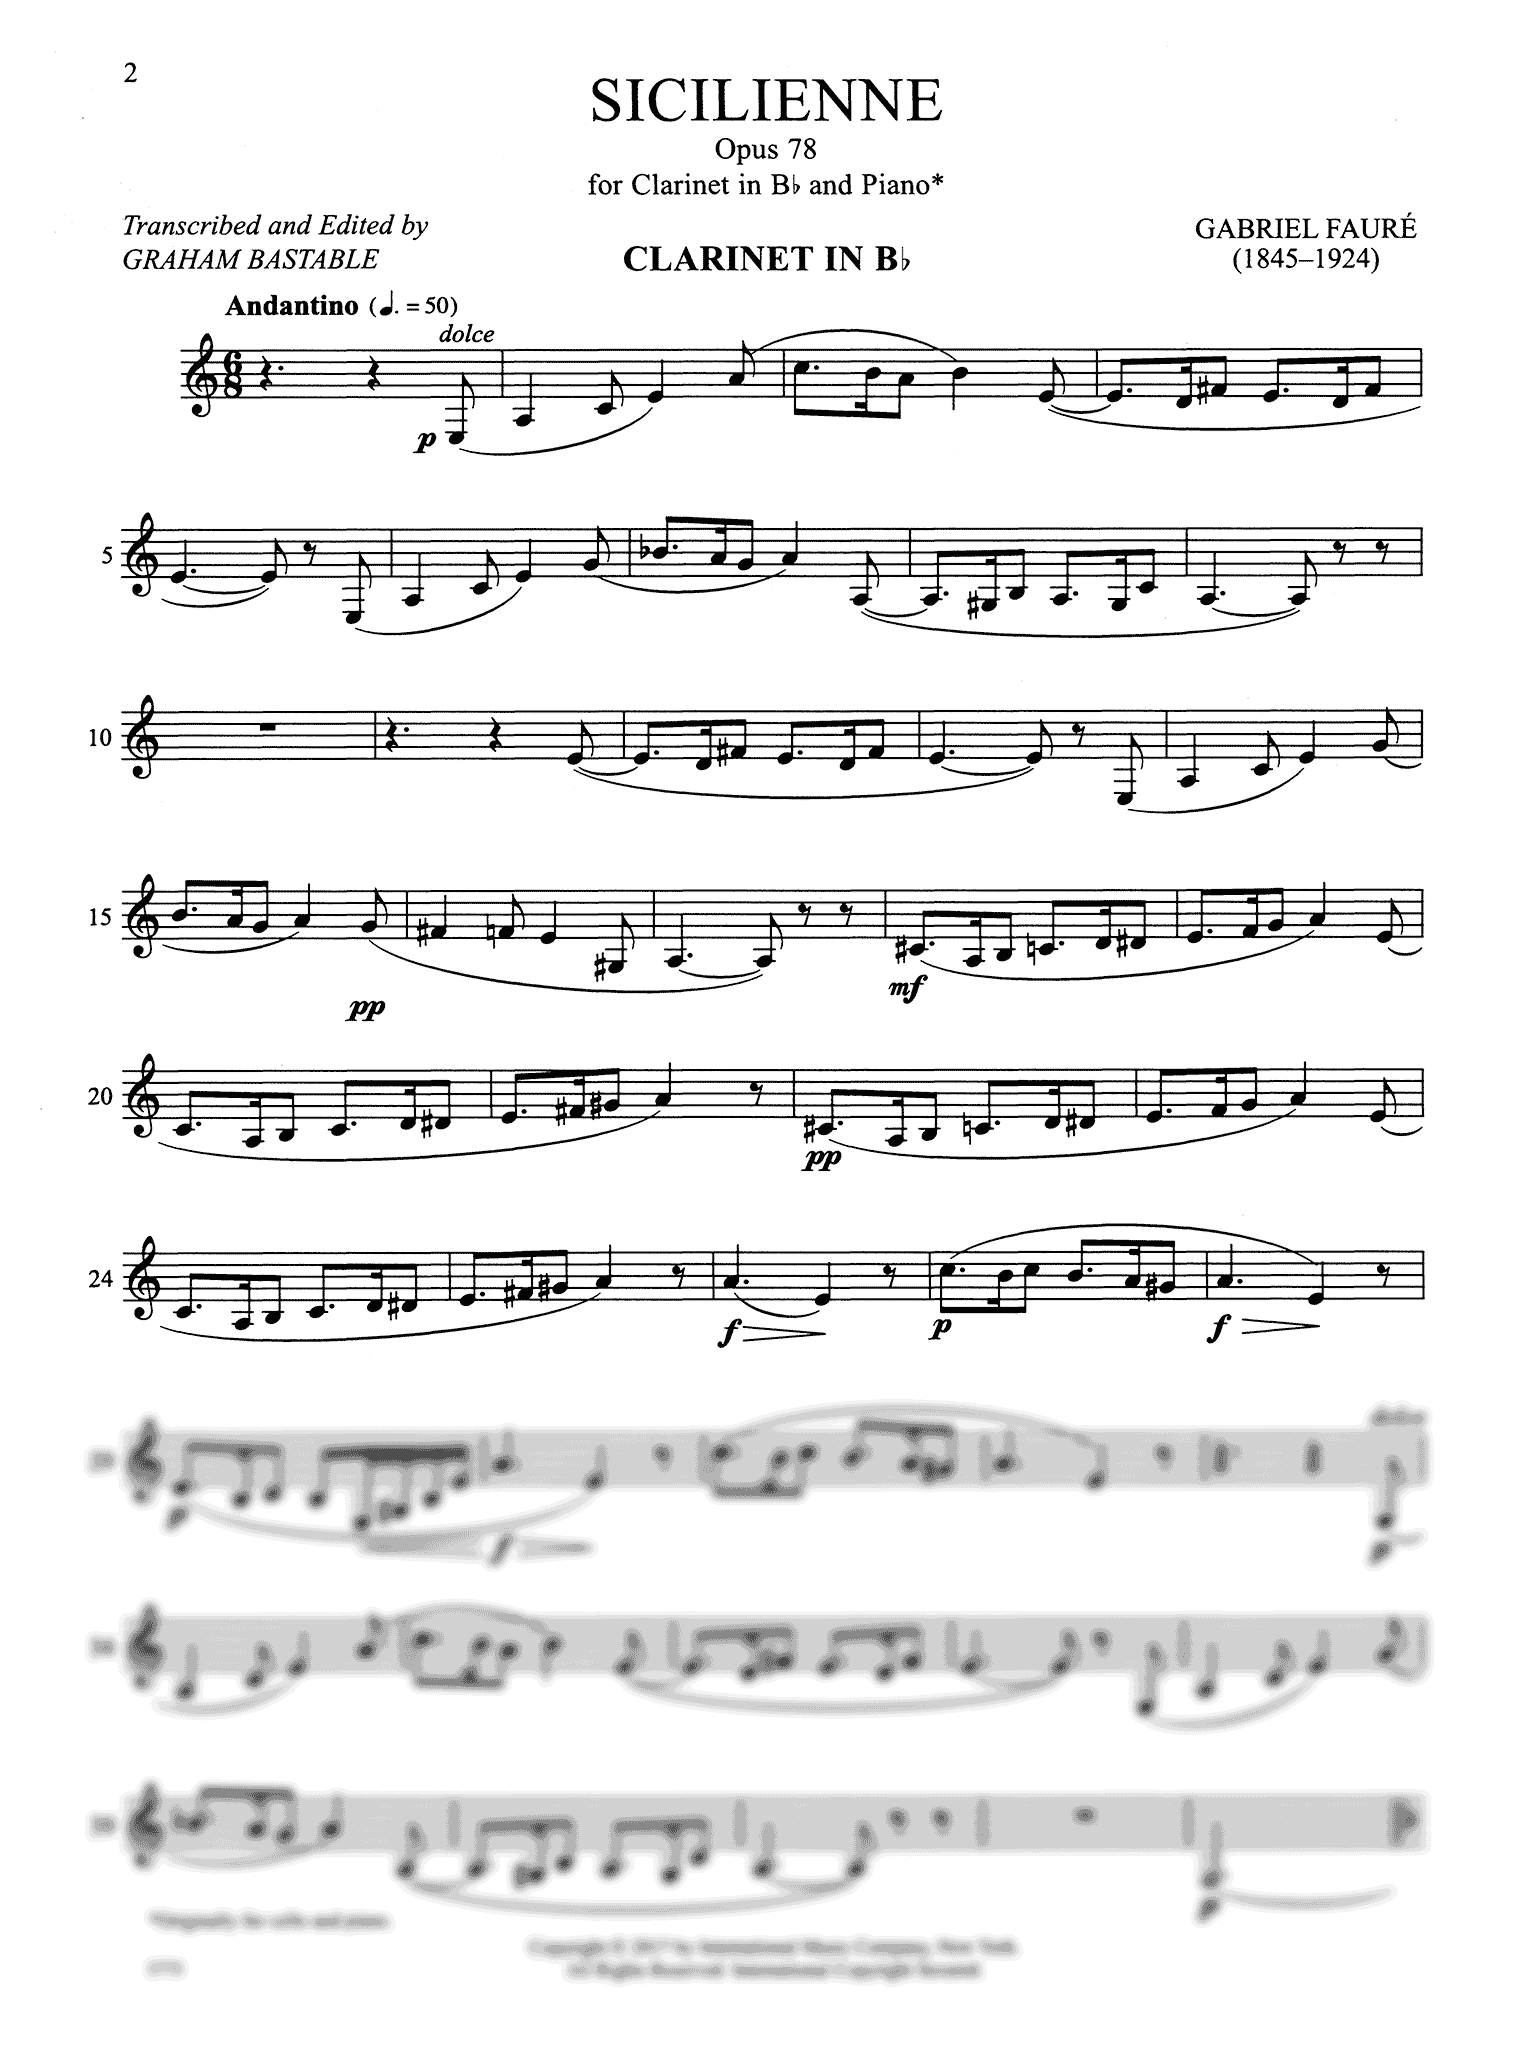 Fauré, Gabriel: Sicilienne, Op. 78 for clarinet & piano solo part